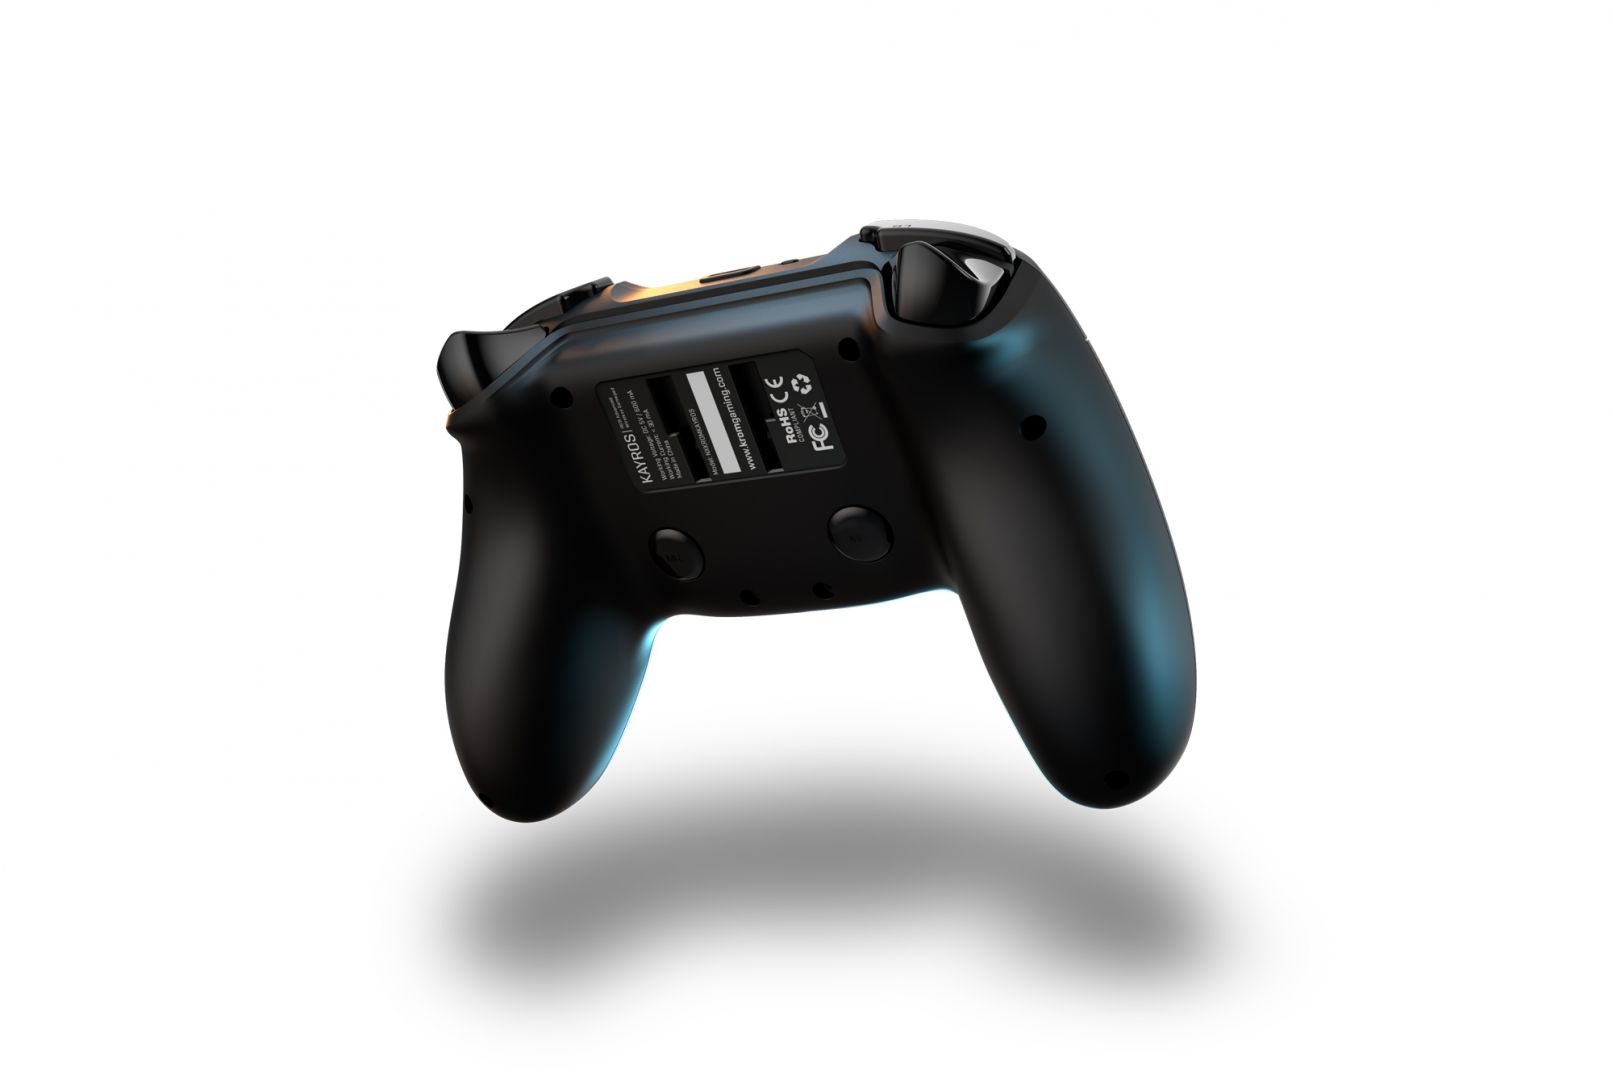 Así es el nuevo Krom Kayros, un mando inalámbrico RGB con soporte para móvil integrado - Seguro que buscas alguna opción económica para jugar a Xbox Cloud Gaming. El Krom Kayros podría ser tu mejor baza.